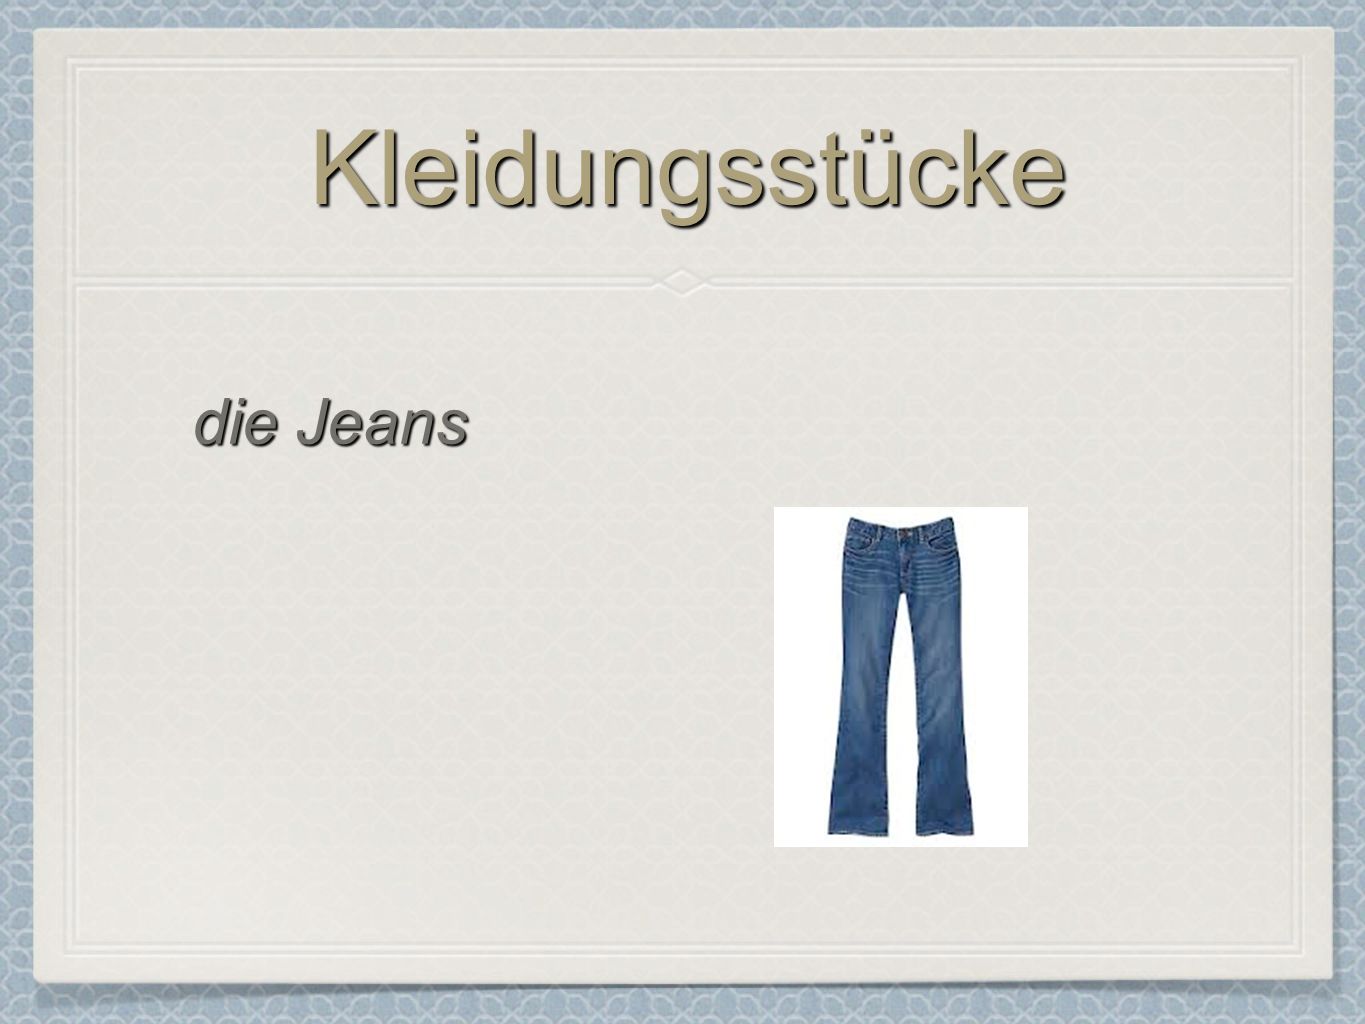 KleidungsstückeKleidungsstücke die Jeans